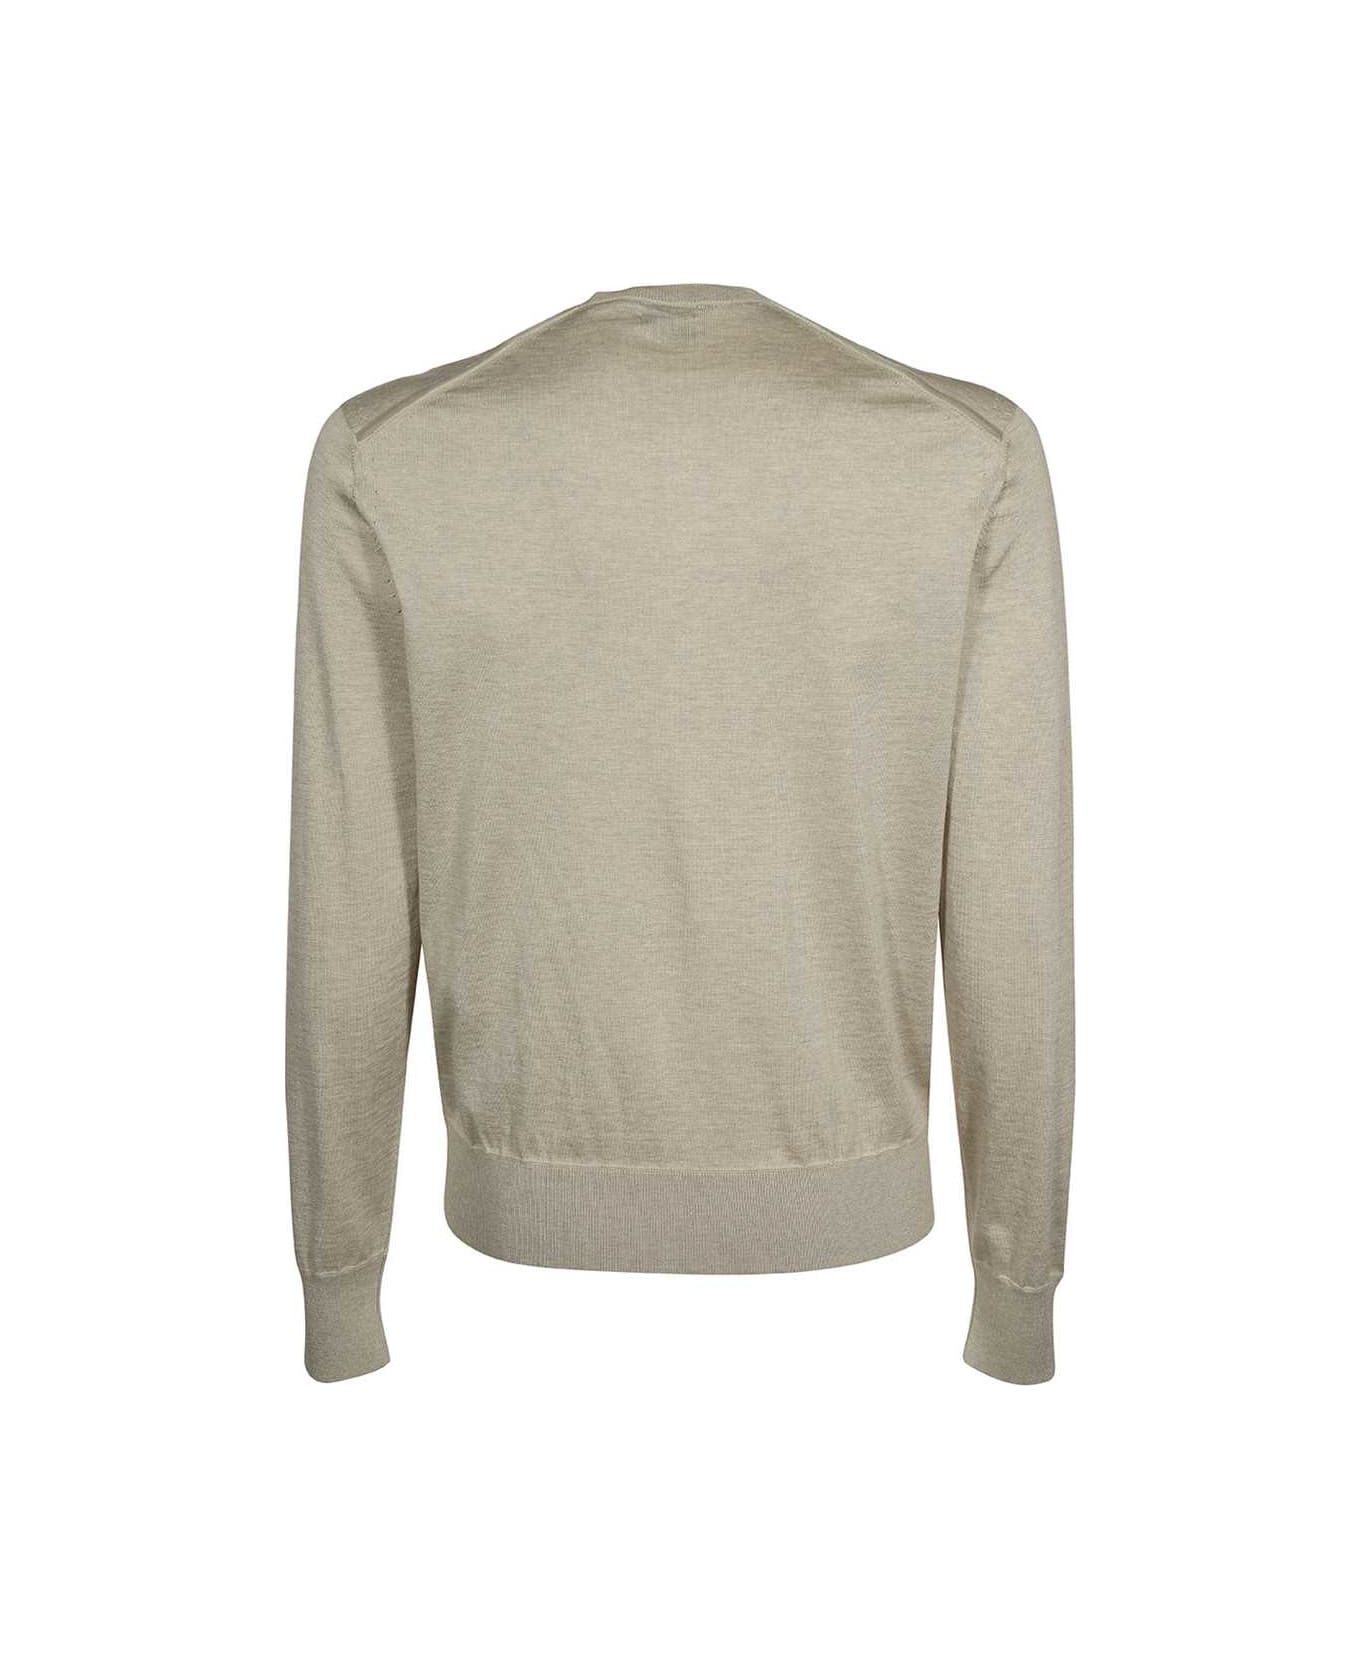 Tom Ford Cotton-silk Blend Sweater - Sand ニットウェア